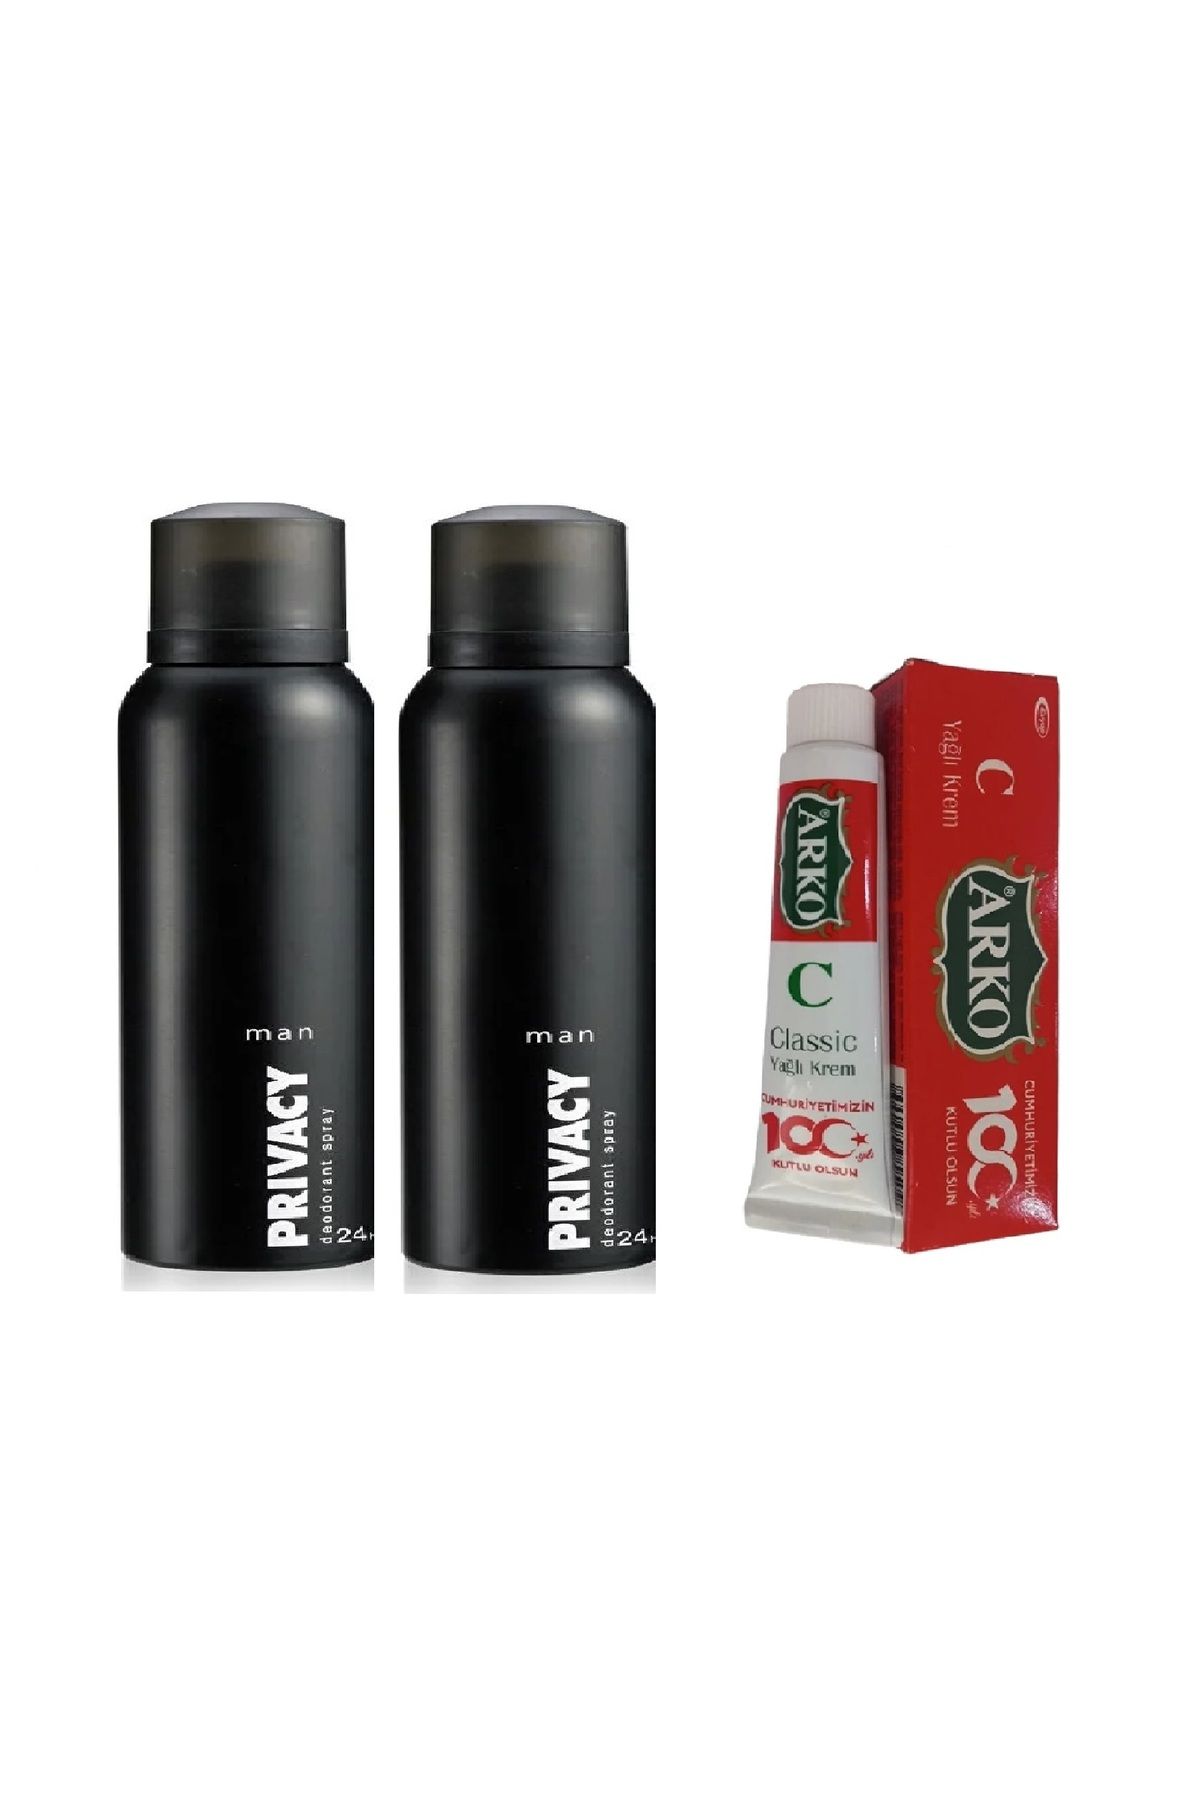 Privacy Erkek Privacy Deodorant 2 Adet 150 ml + 100 Yıl Özel Seri Arko Yağlı 20 ml Krem Hediyeli